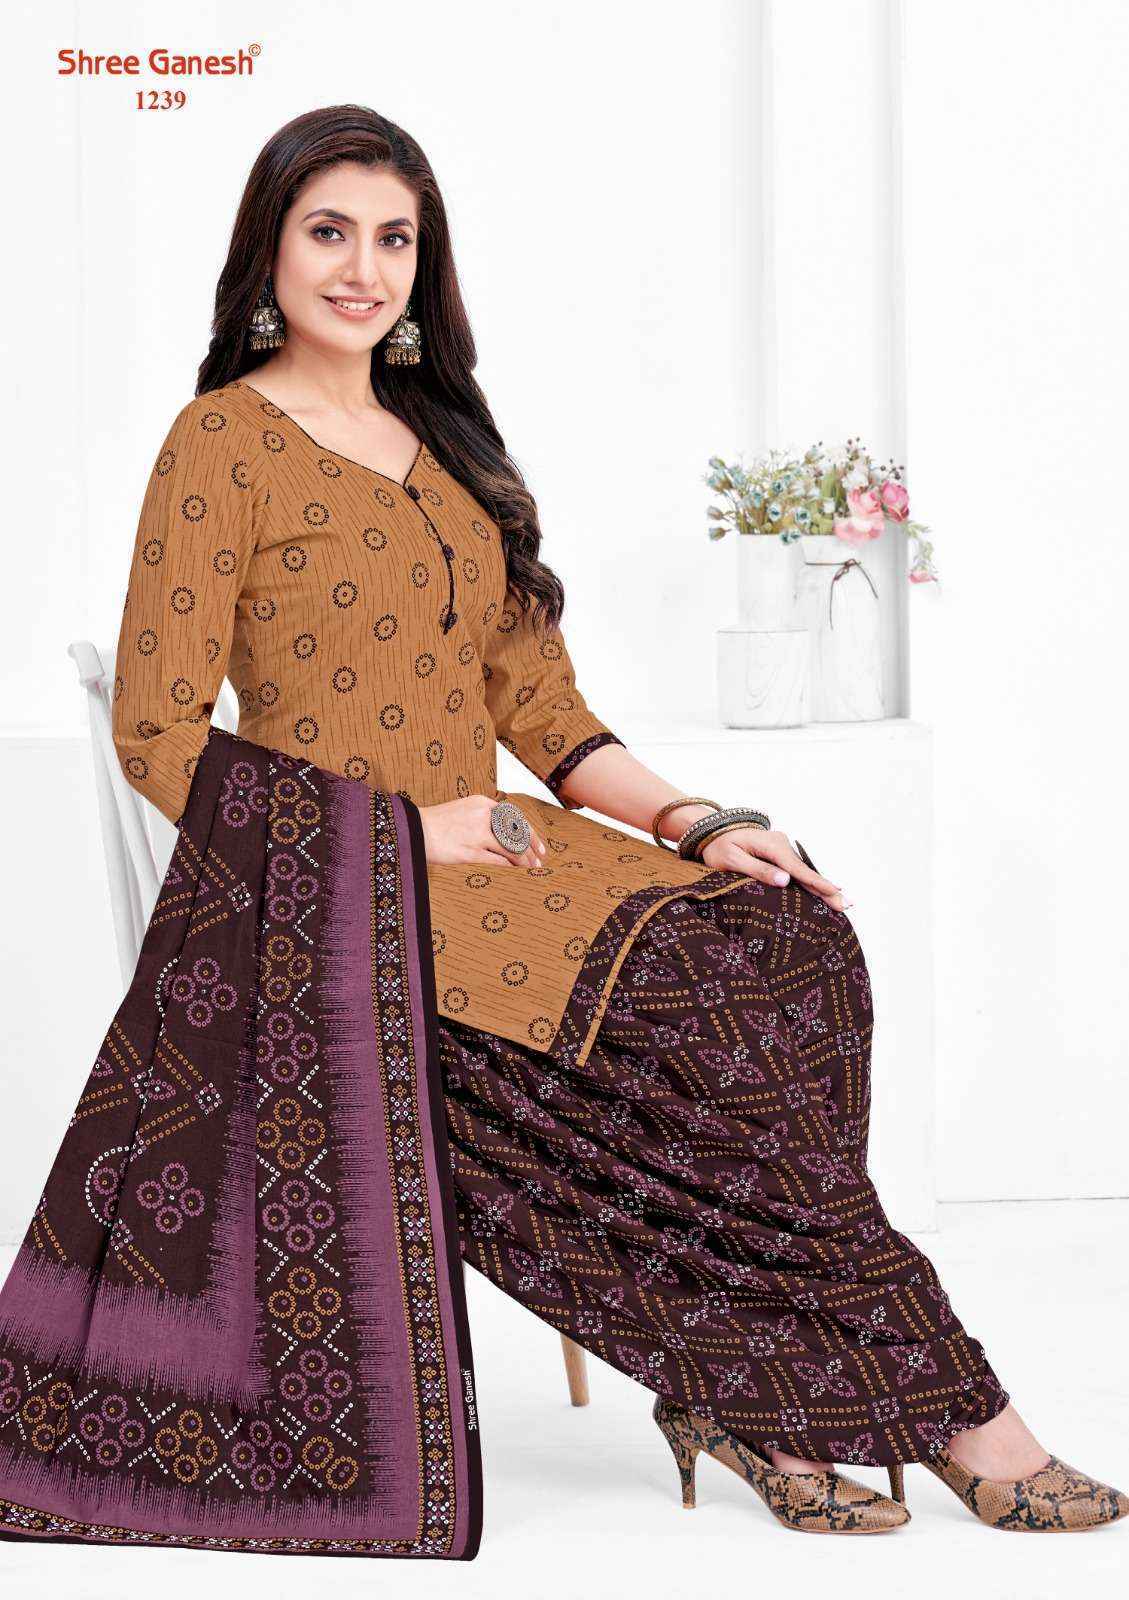 Shree Ganesh Bandhani Vol 2 Cotton Dress Material ( 15 pcs Catalogue )